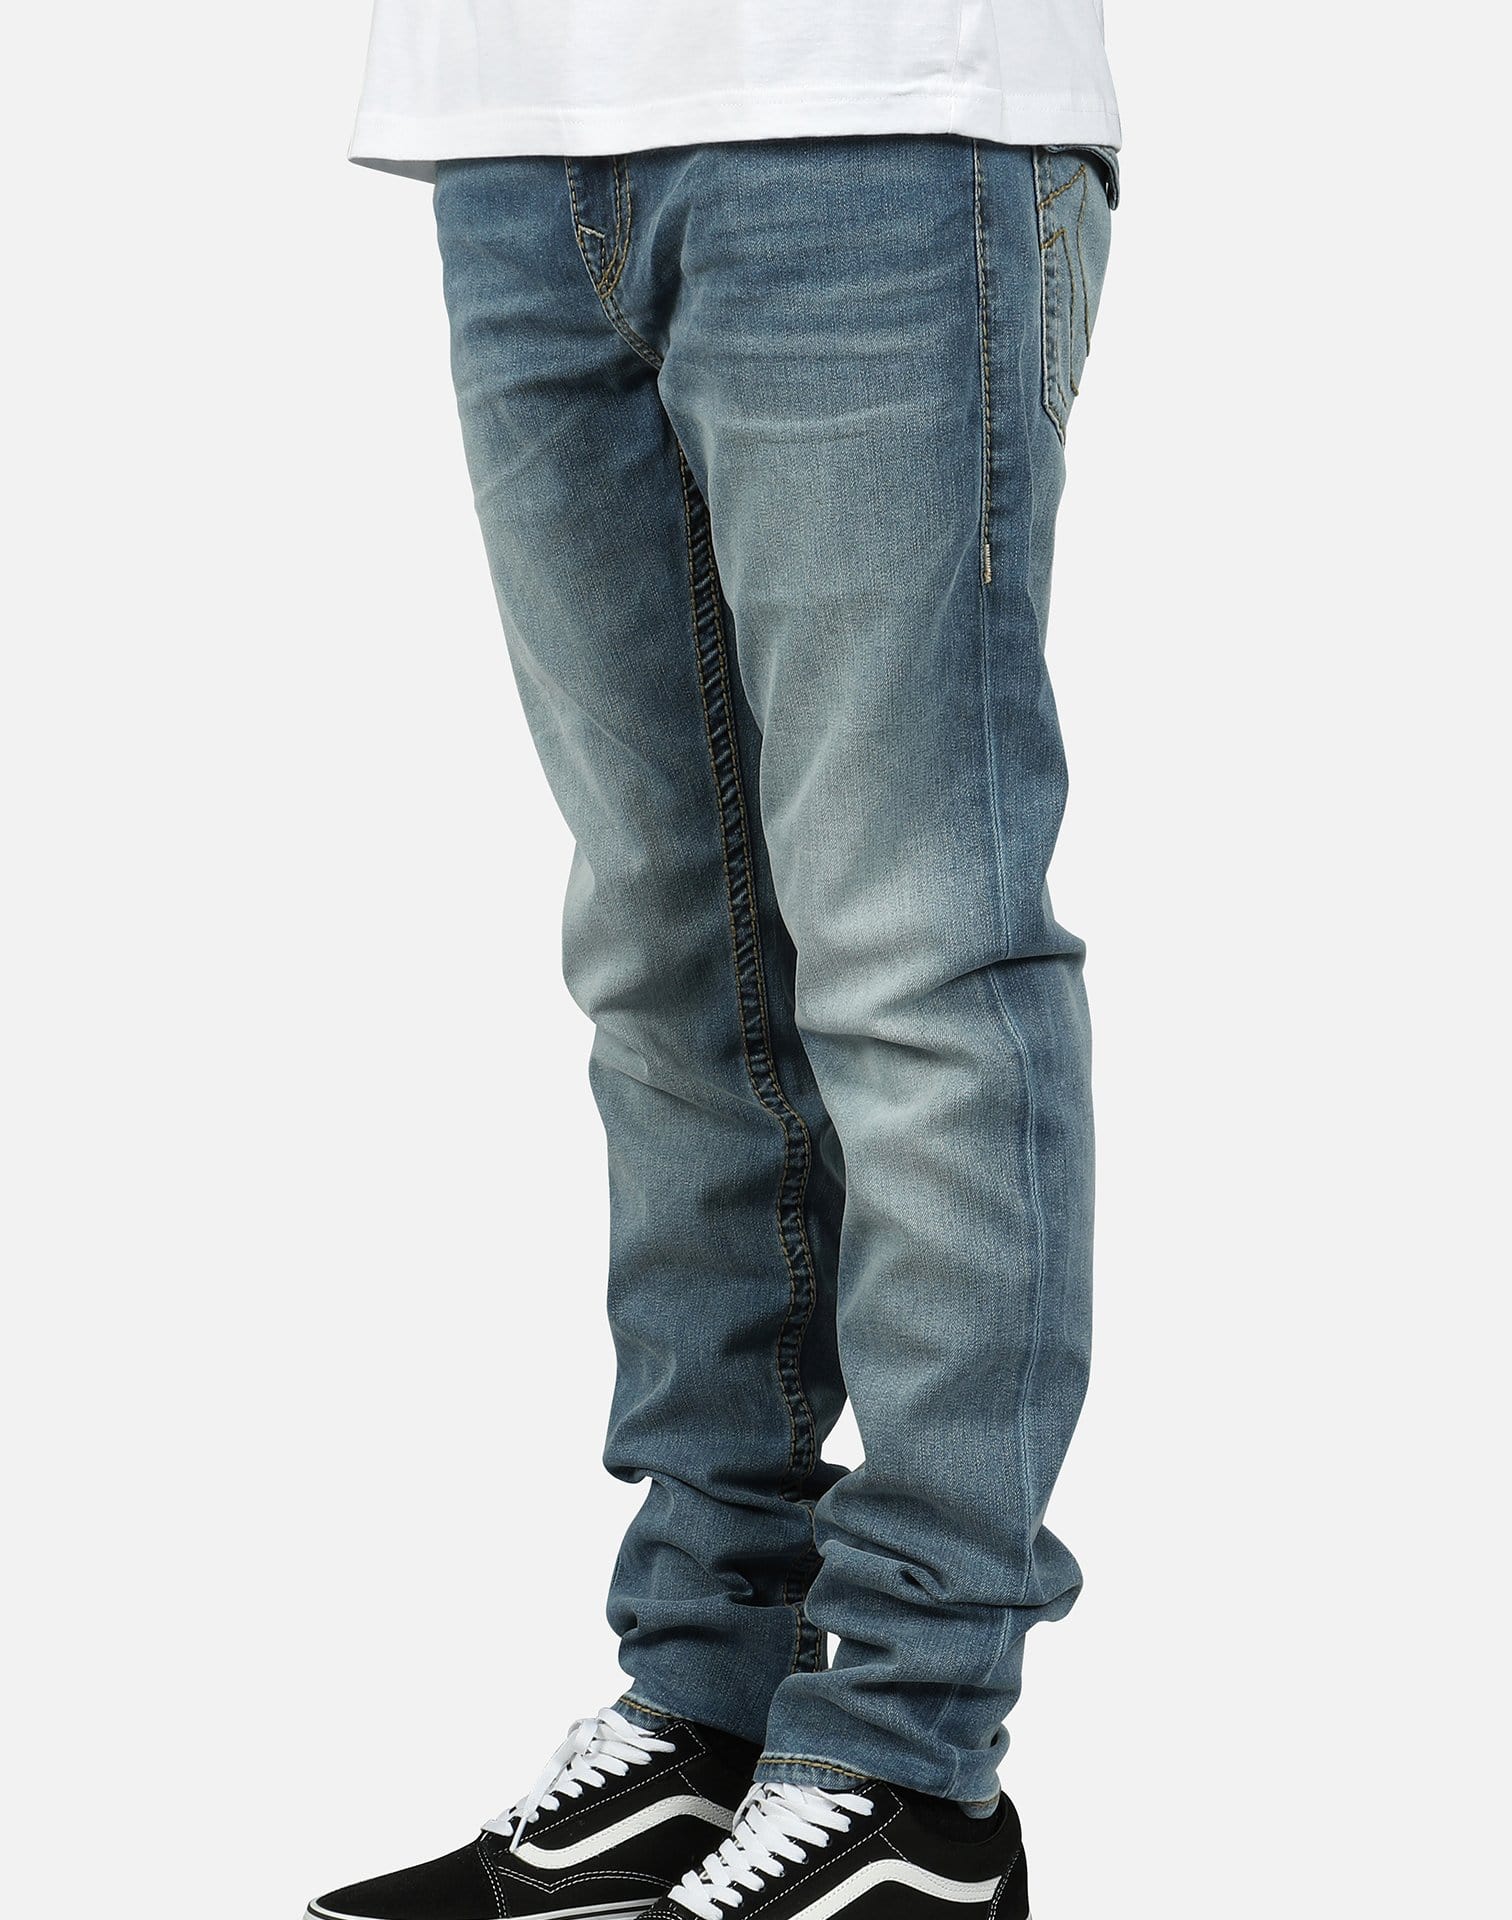 true religion skinny jeans men